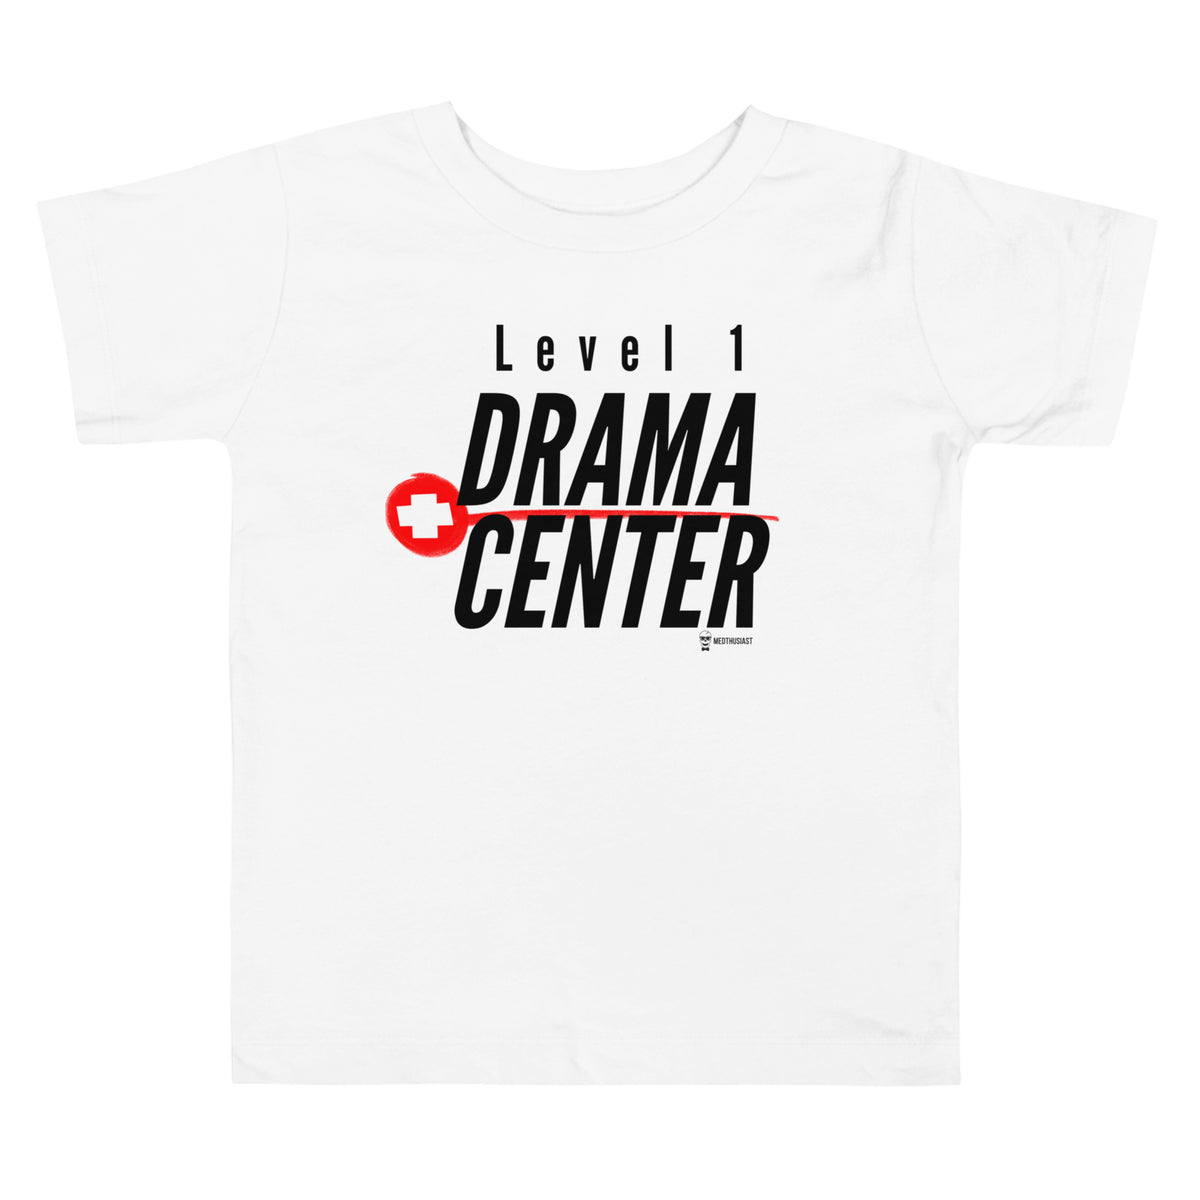 Level 1 Drama Center Toddler Tee